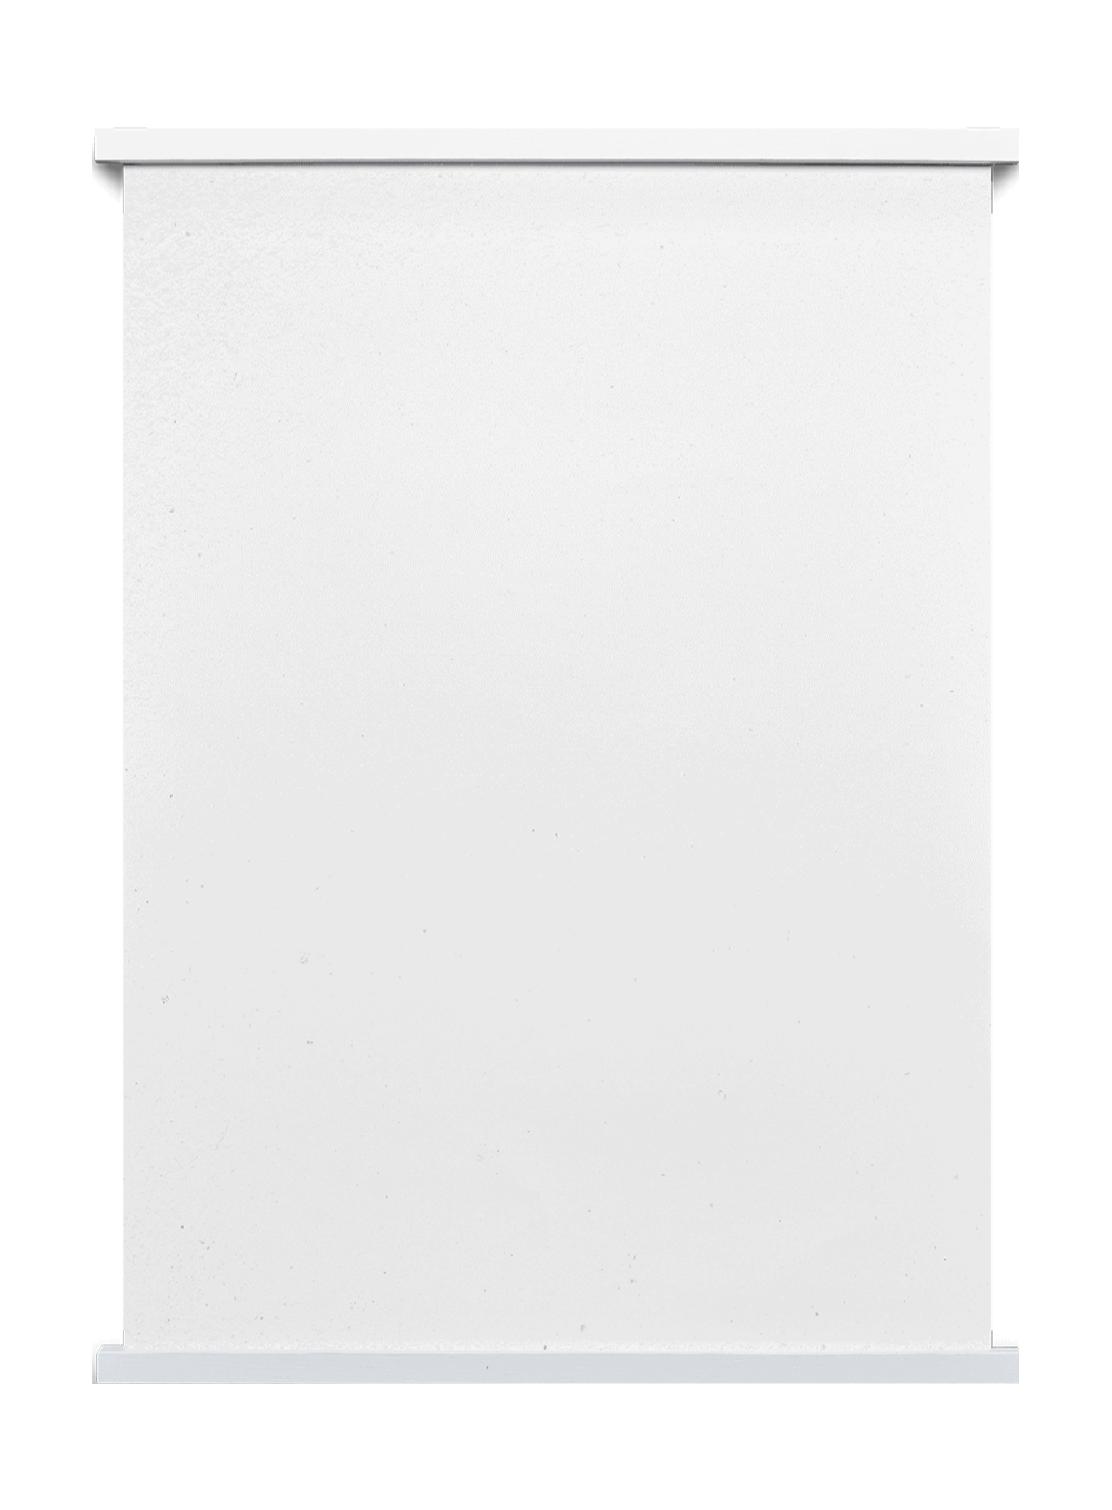 Paper Collective S tii cks 33 barre de l'affiche magnétique, blanc